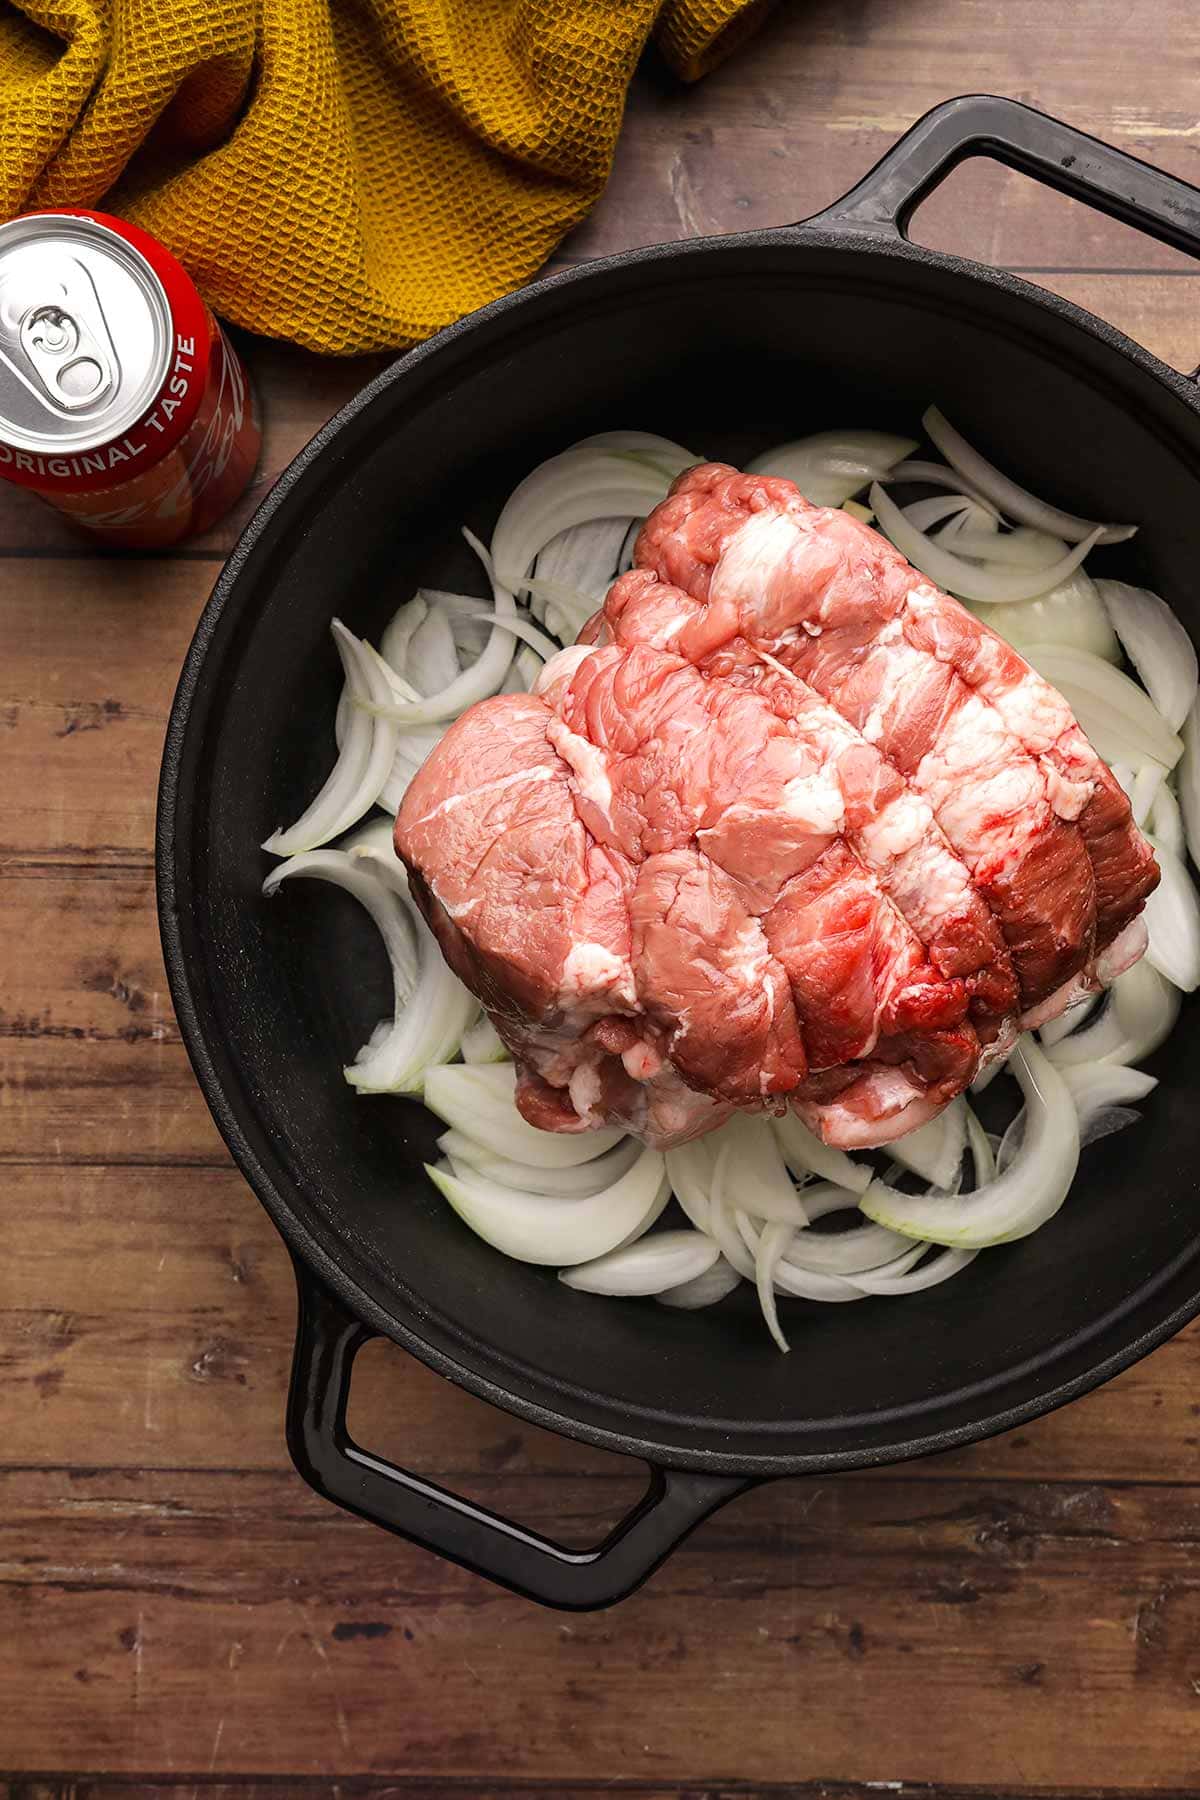 Coca-Cola Pork Roast ingredients in cooking pot